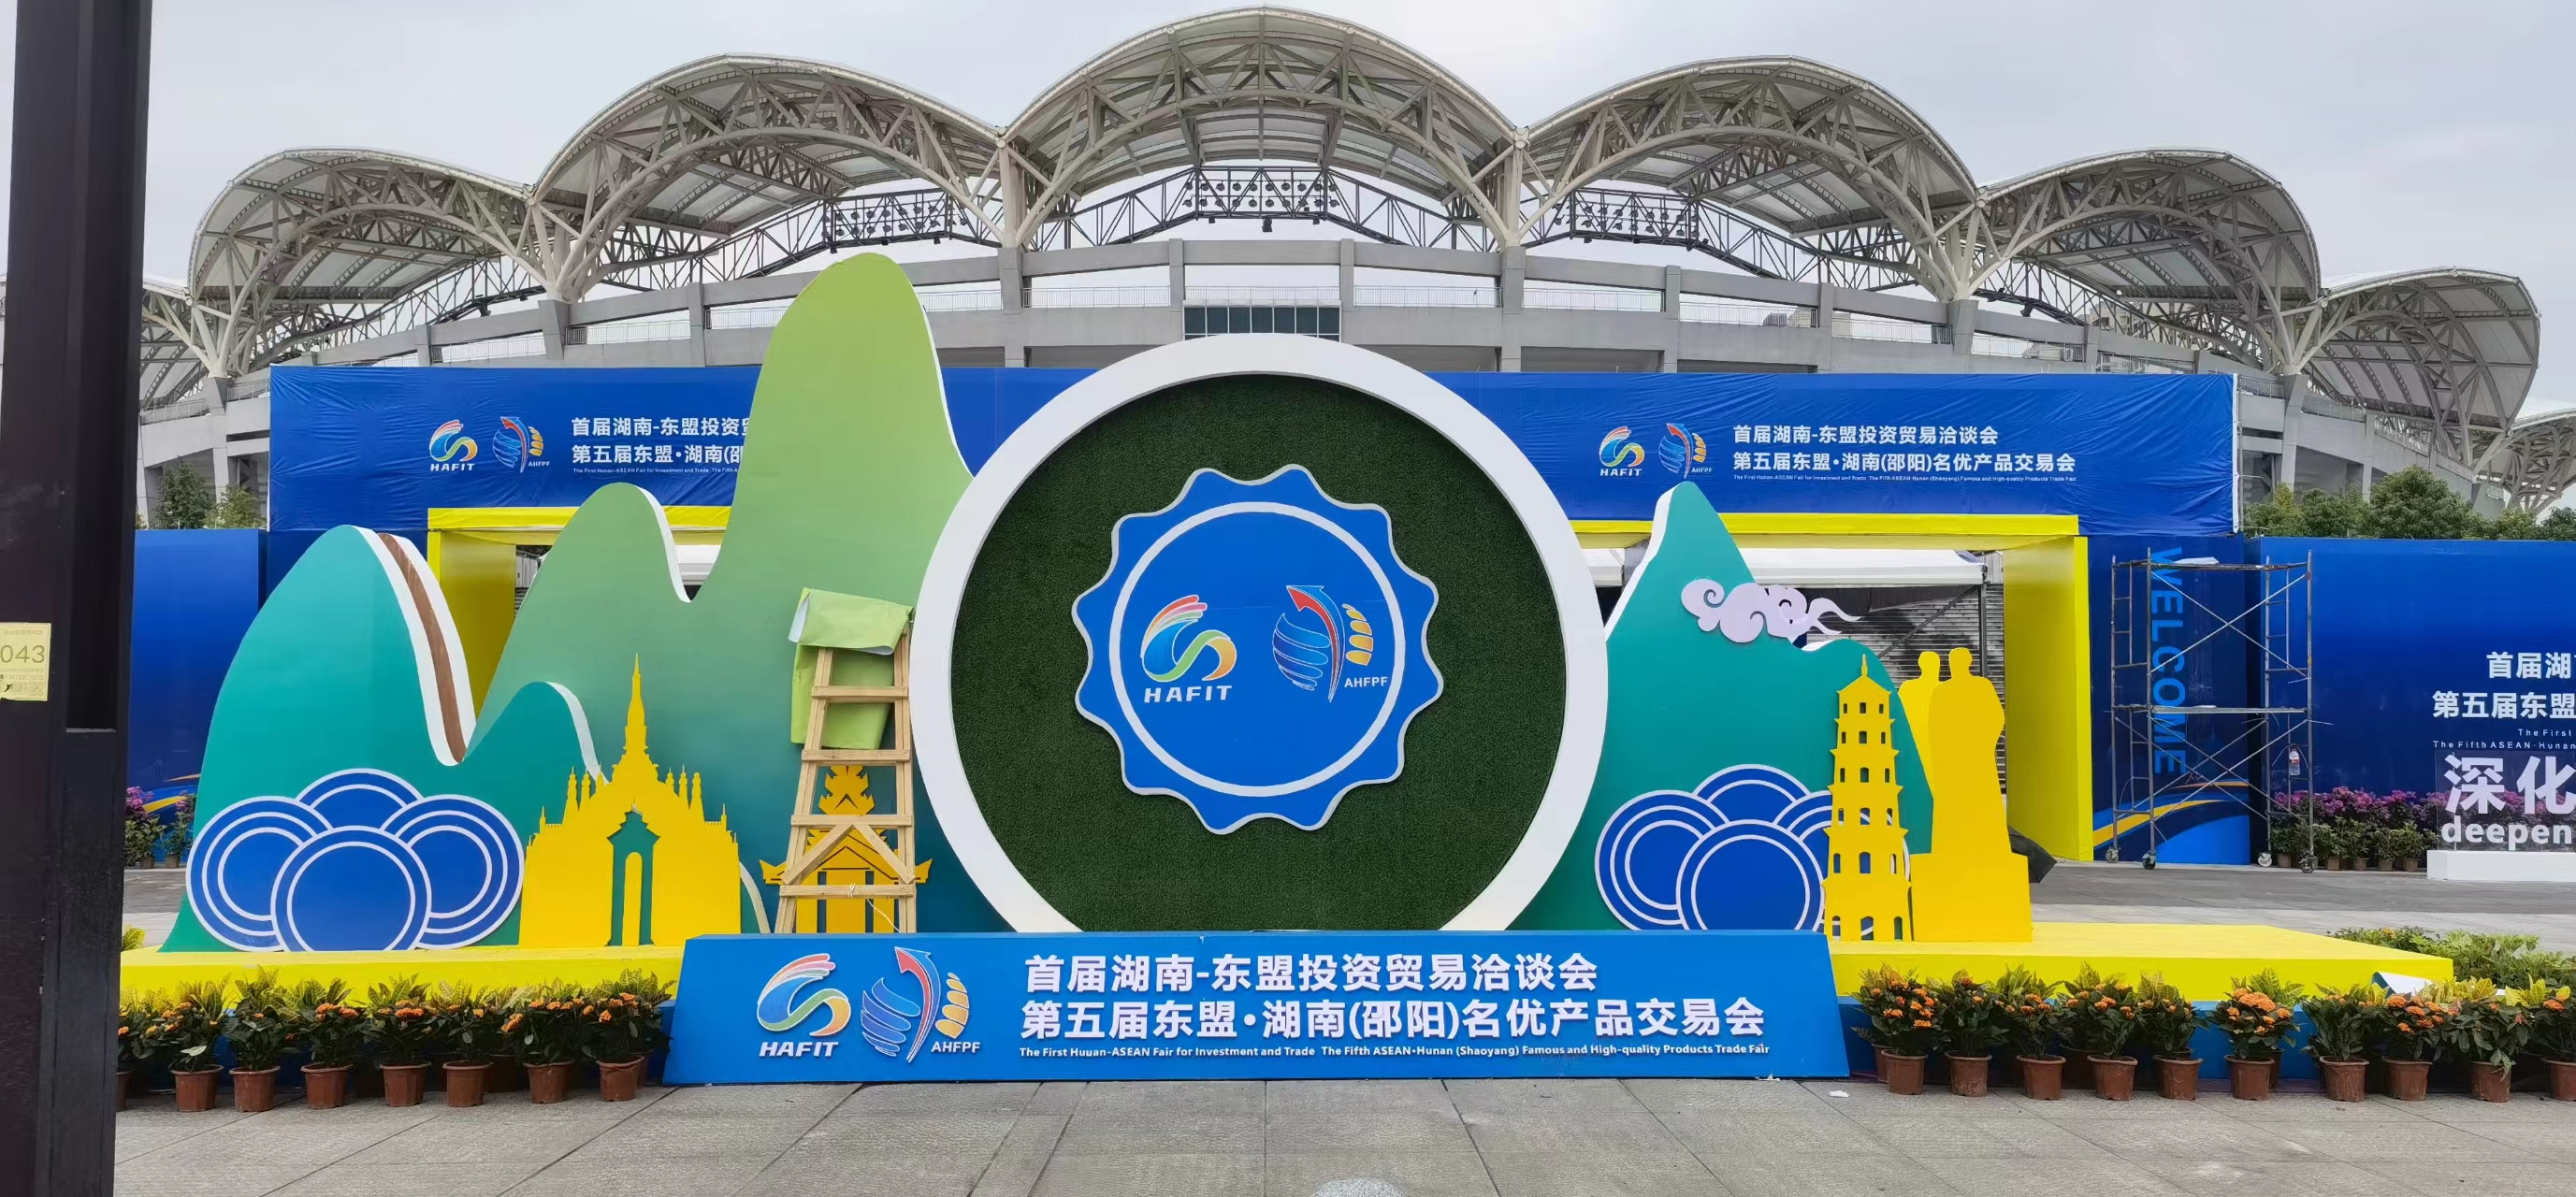 ပထမဆုံး ဟူနန်-အာဆီယံ ရင်းနှီးမြှုပ်နှံမှုနှင့် ကုန်စည်ပြပွဲကို Shaoyang တွင် ဖွင့်လှစ်ခဲ့သည်။